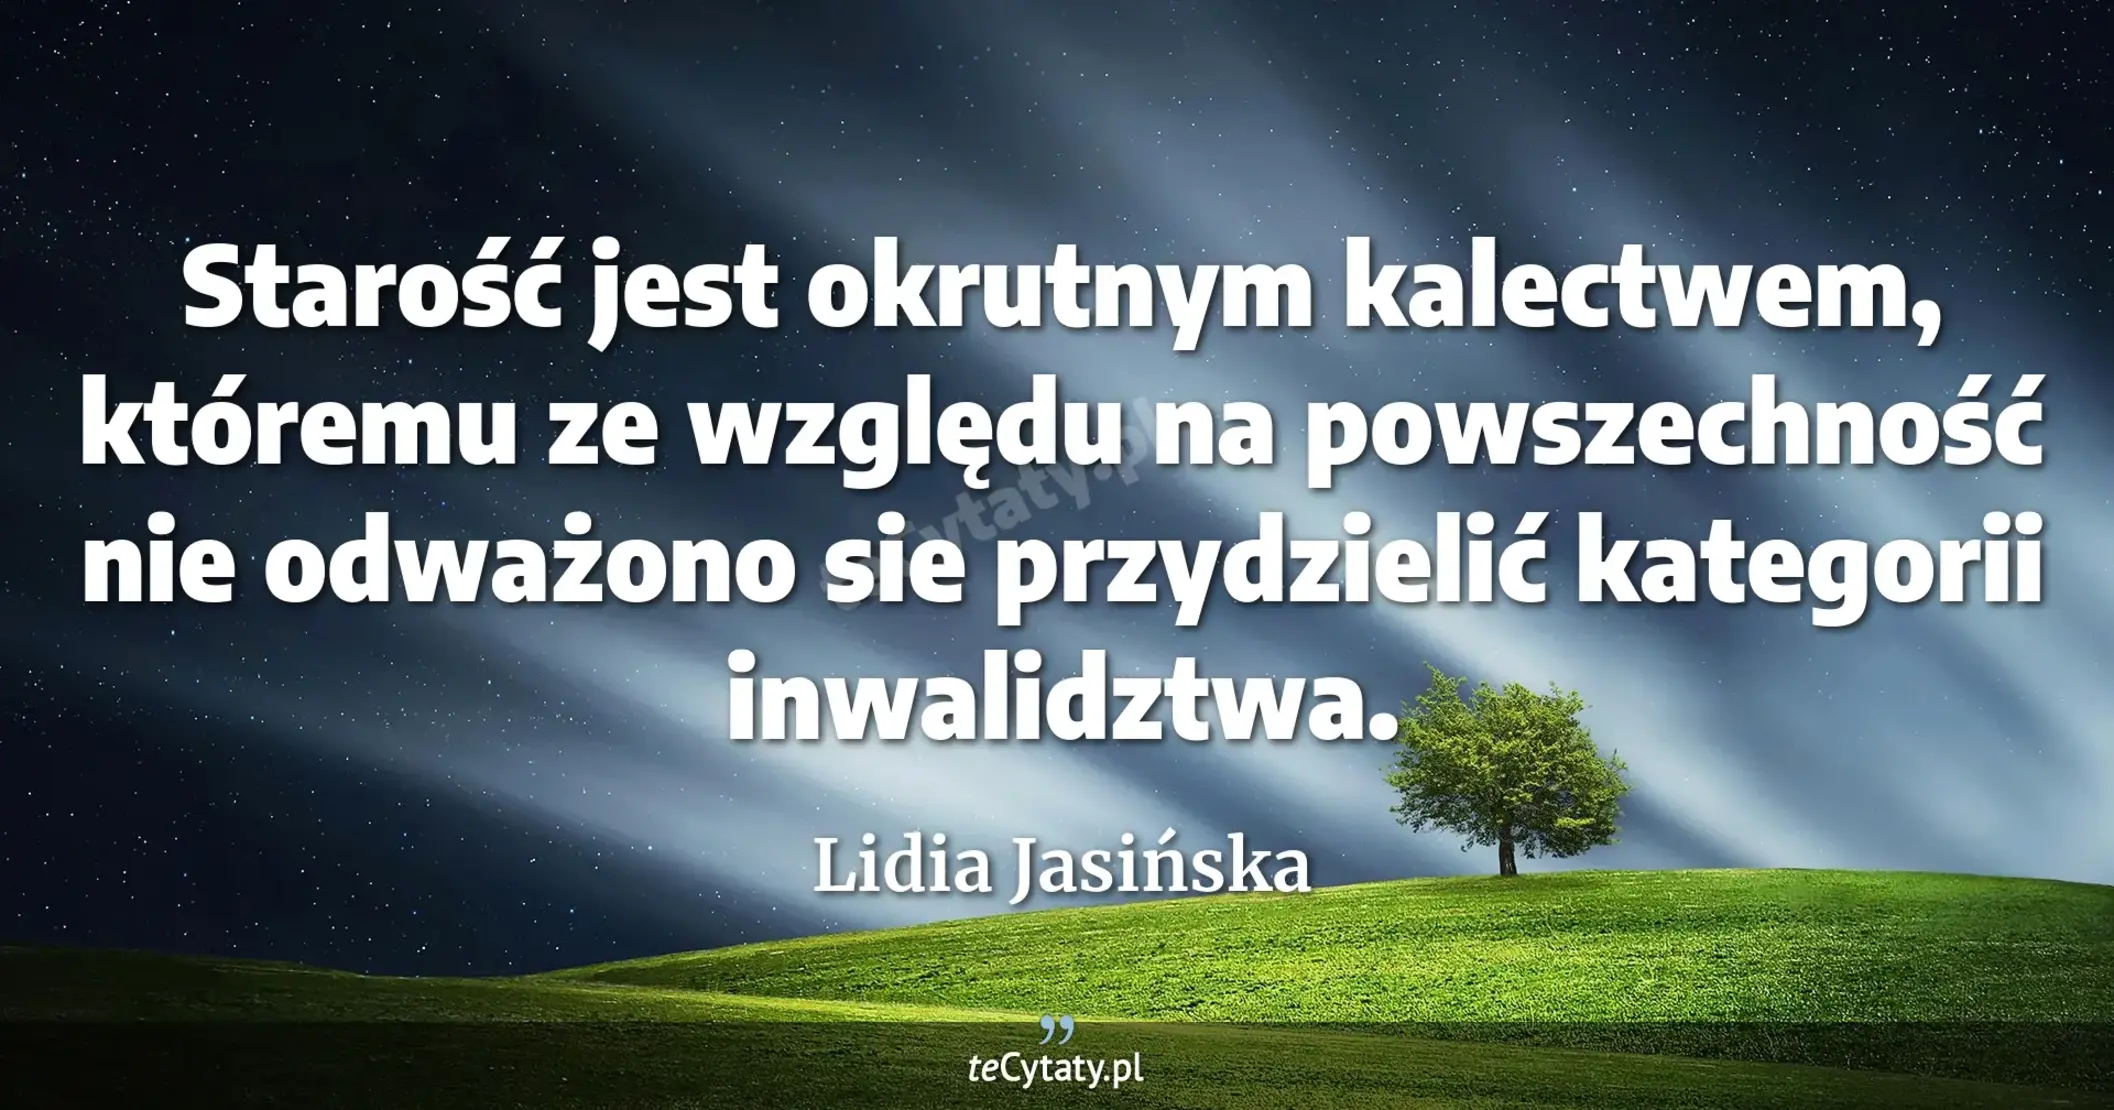 Starość jest okrutnym kalectwem, któremu ze względu na powszechność nie odważono sie przydzielić kategorii inwalidztwa. - Lidia Jasińska